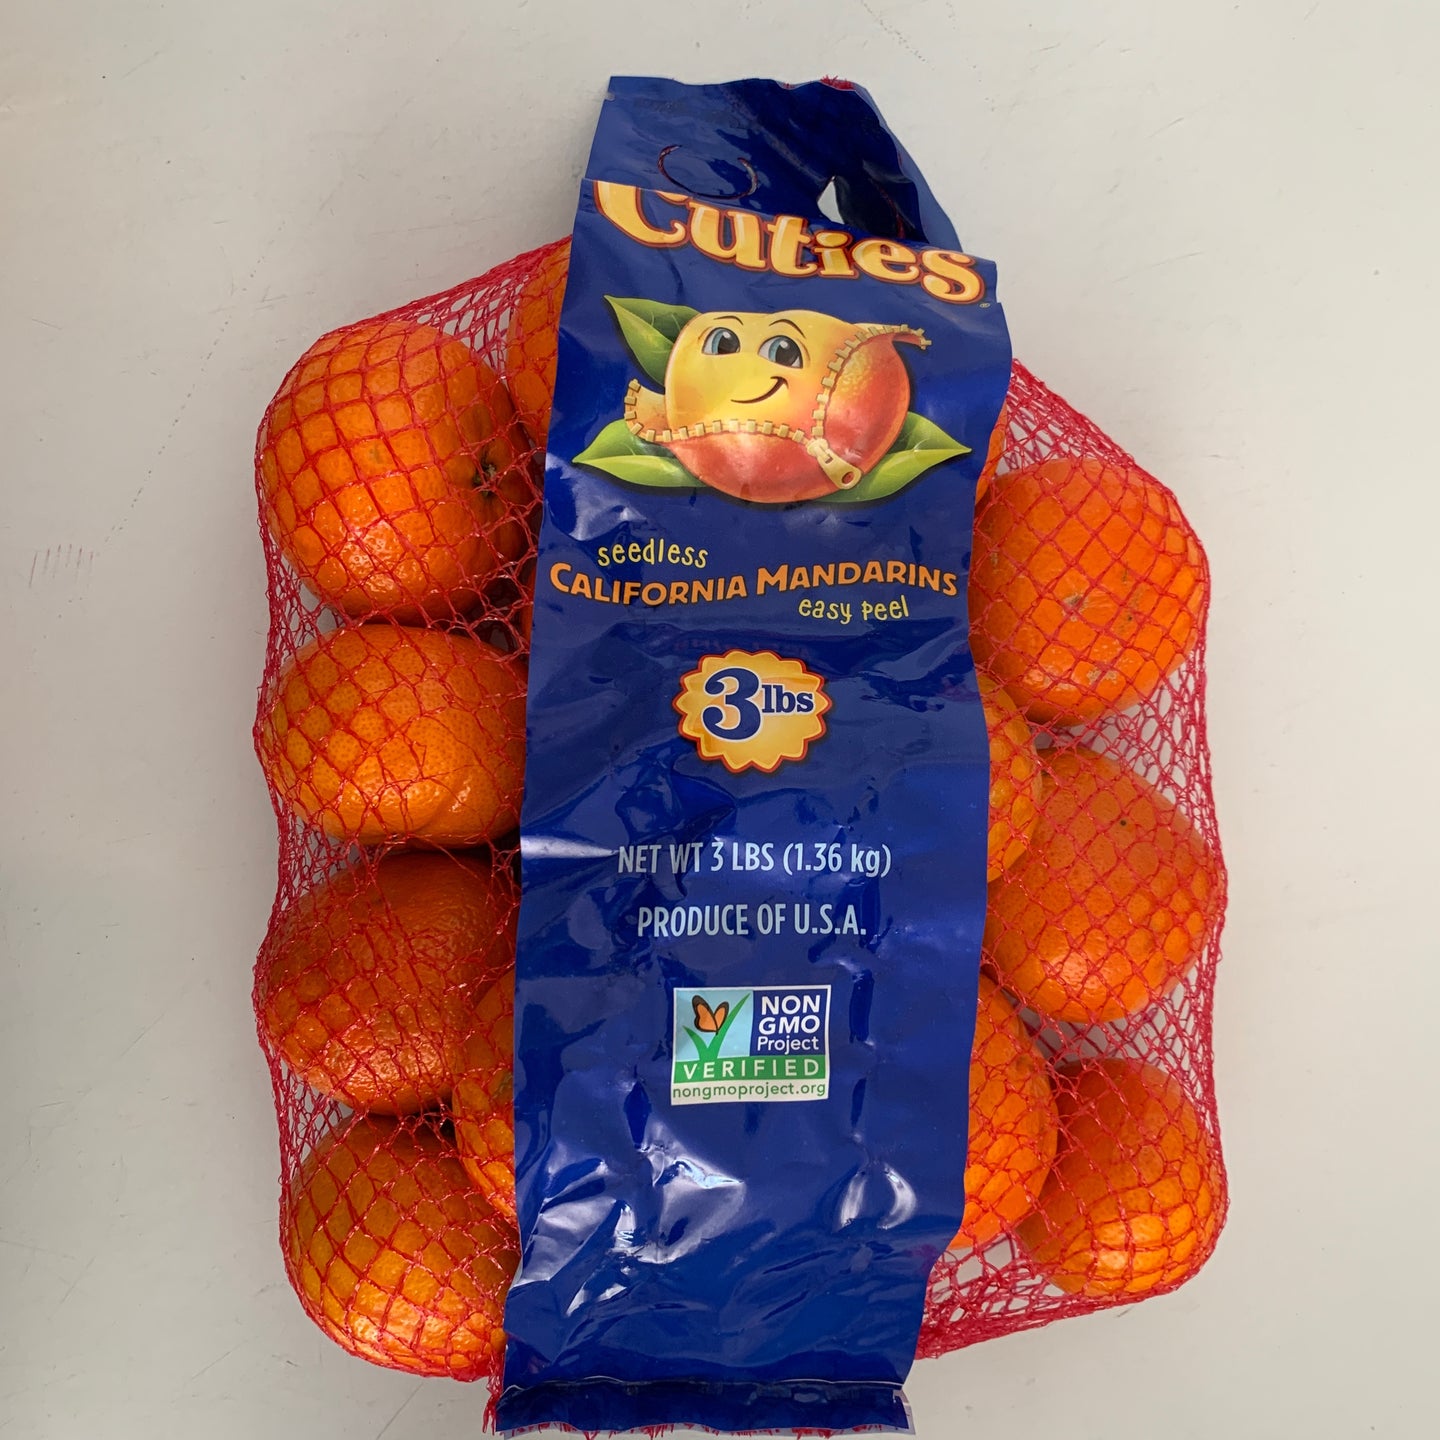 Clementines (3 pounds), Shop